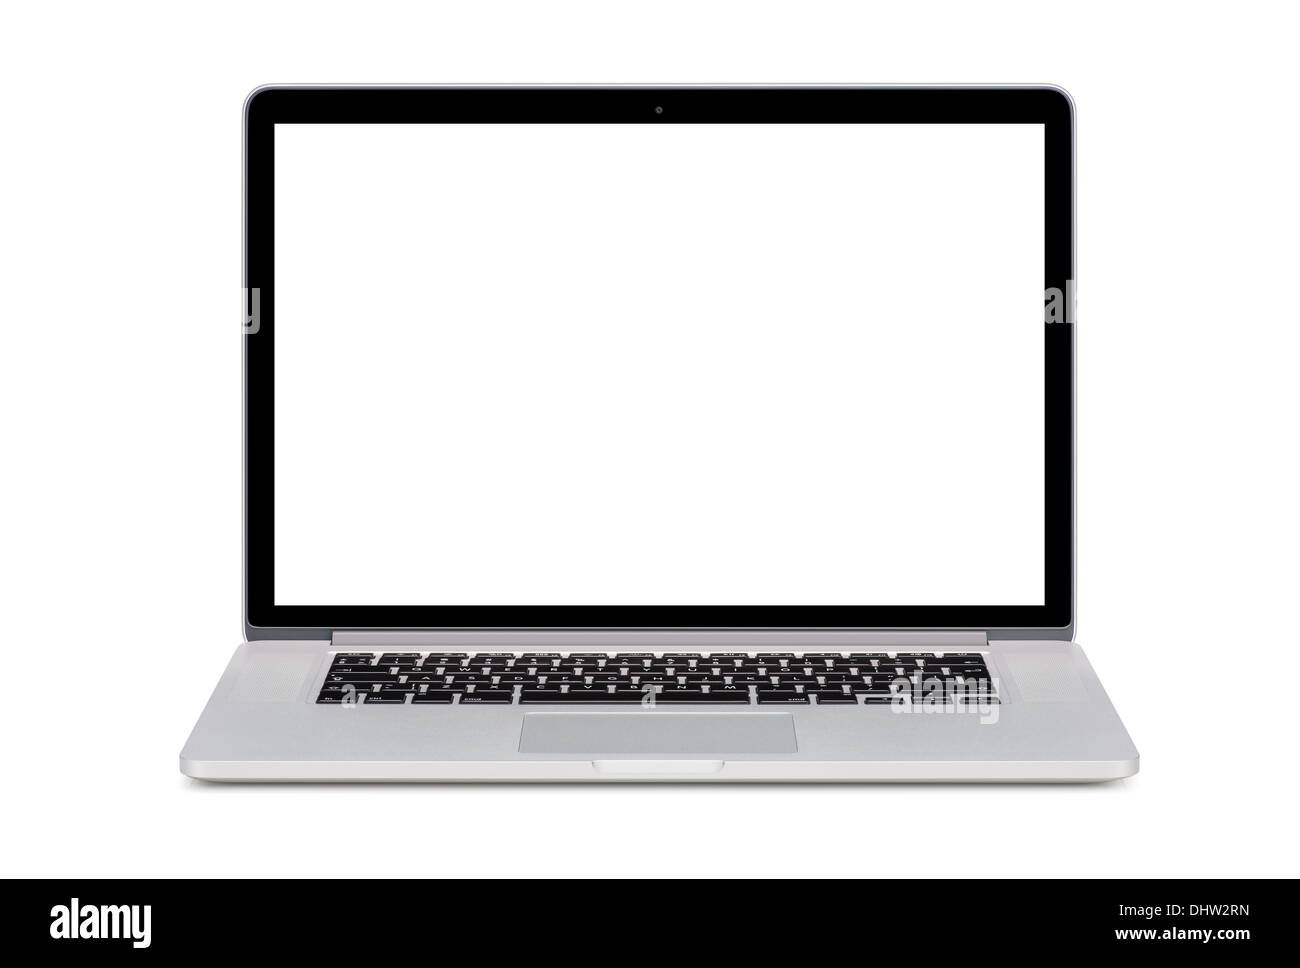 Vue de face d'un ordinateur portable moderne avec un écran blanc et un clavier anglais isolé sur fond blanc. Haute qualité. Banque D'Images